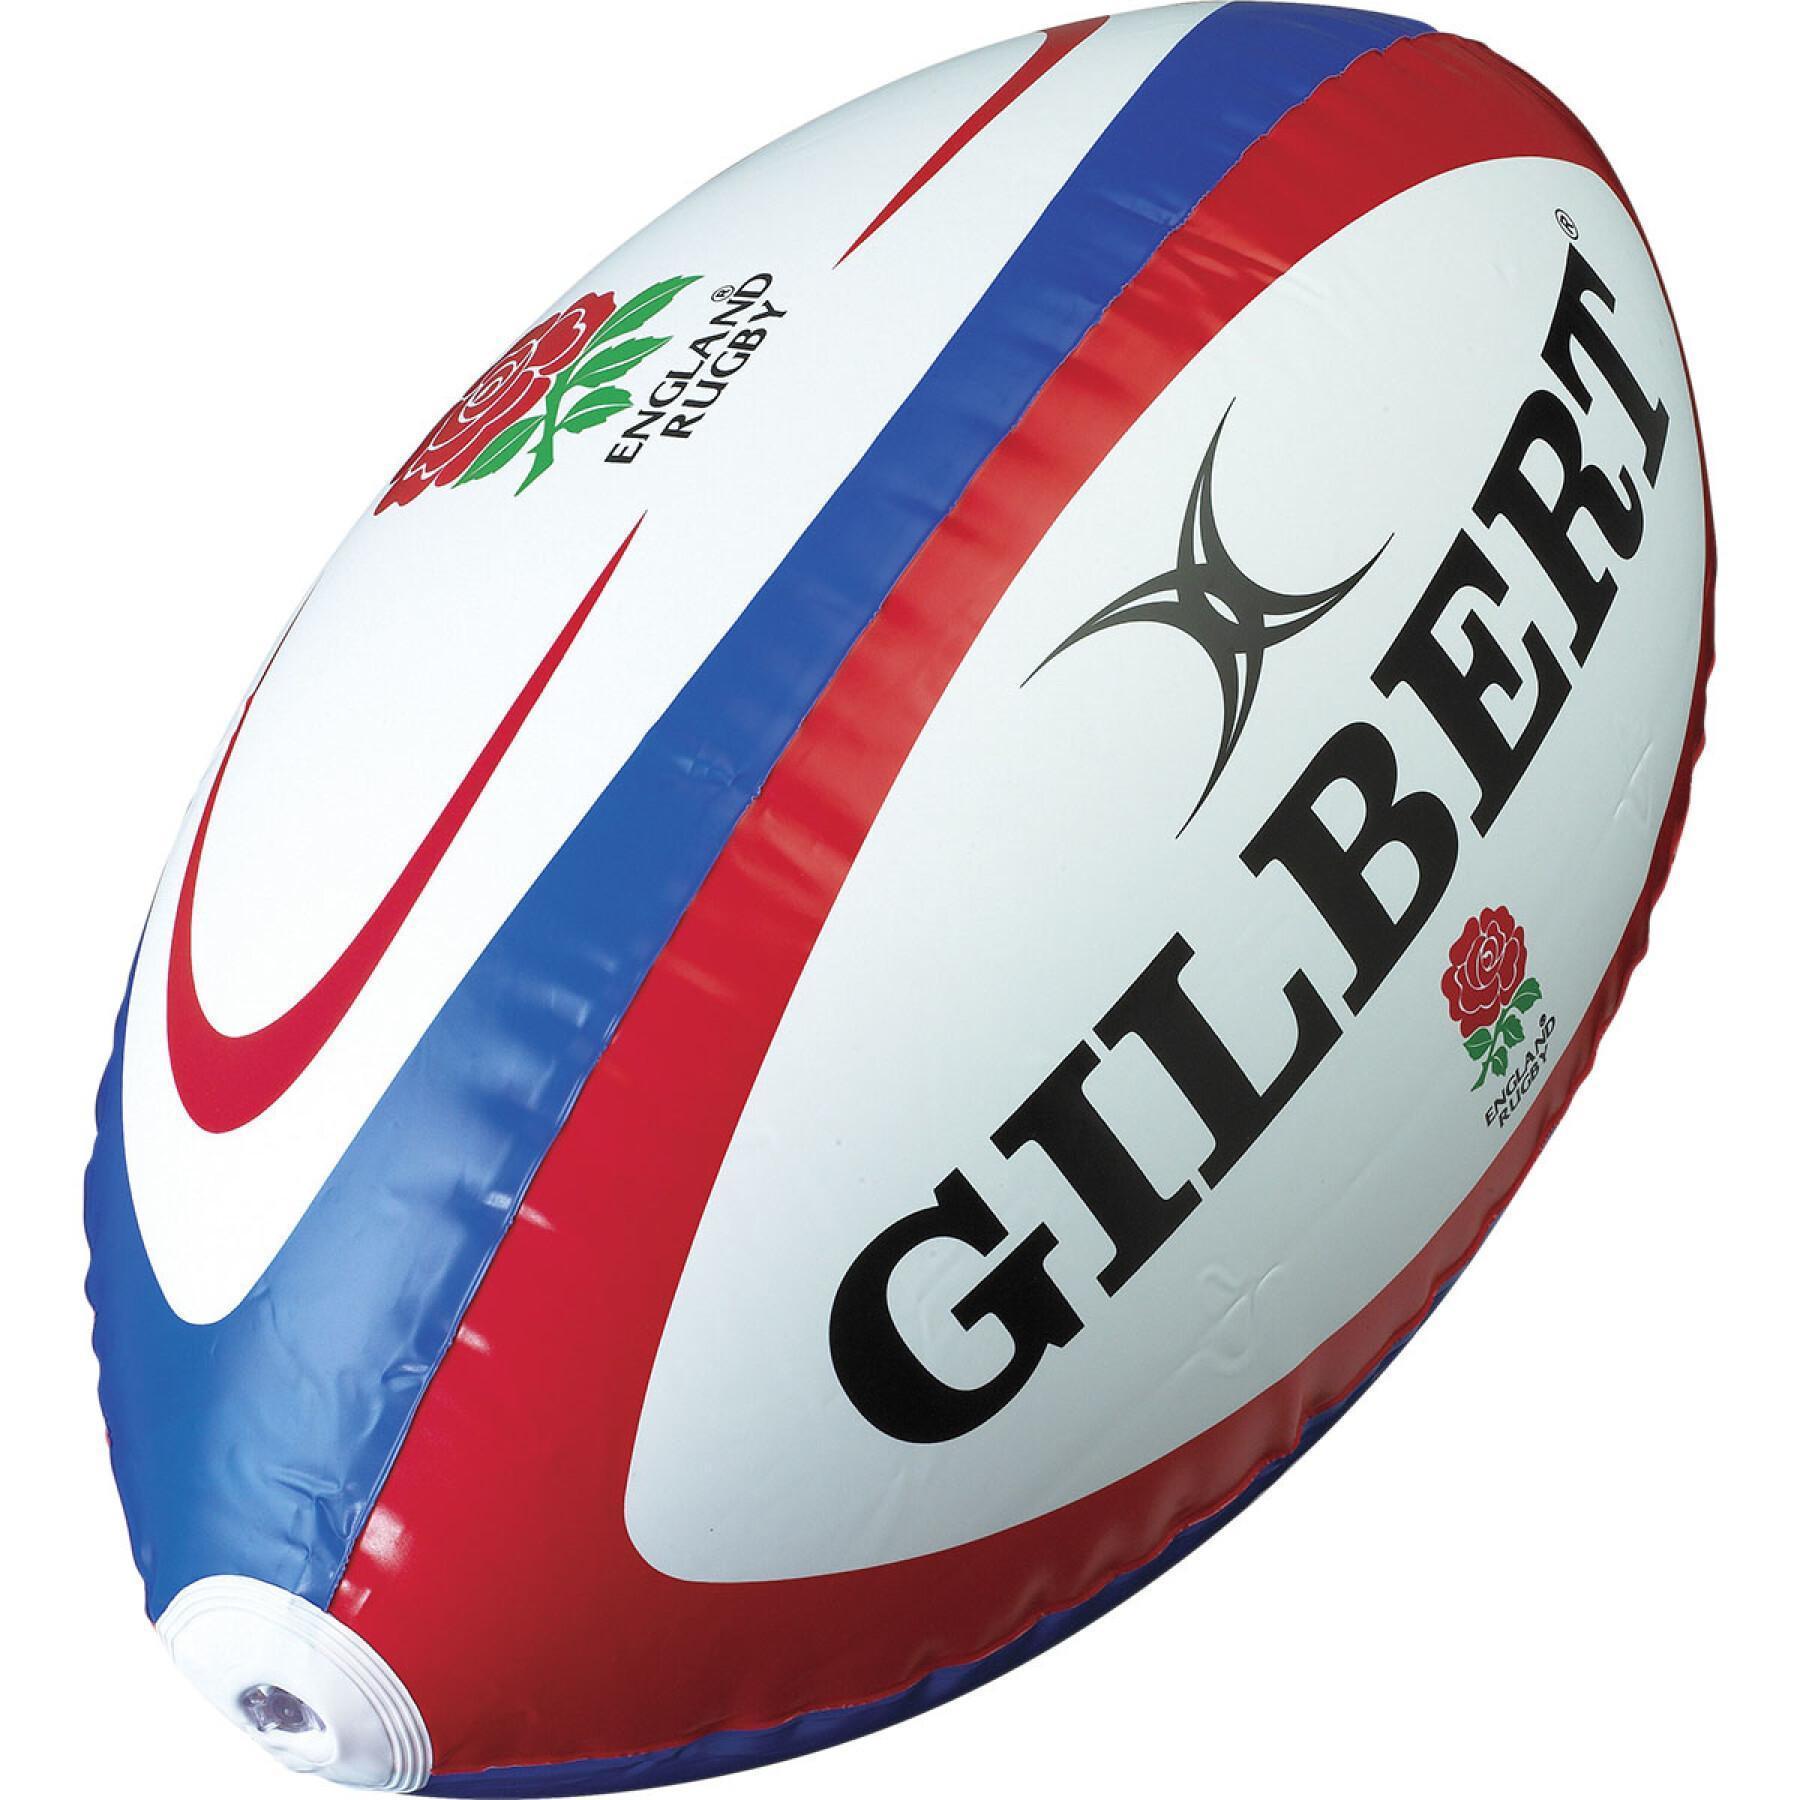 Jättestor uppblåsbar rugbyboll Gilbert Angleterre (tu)